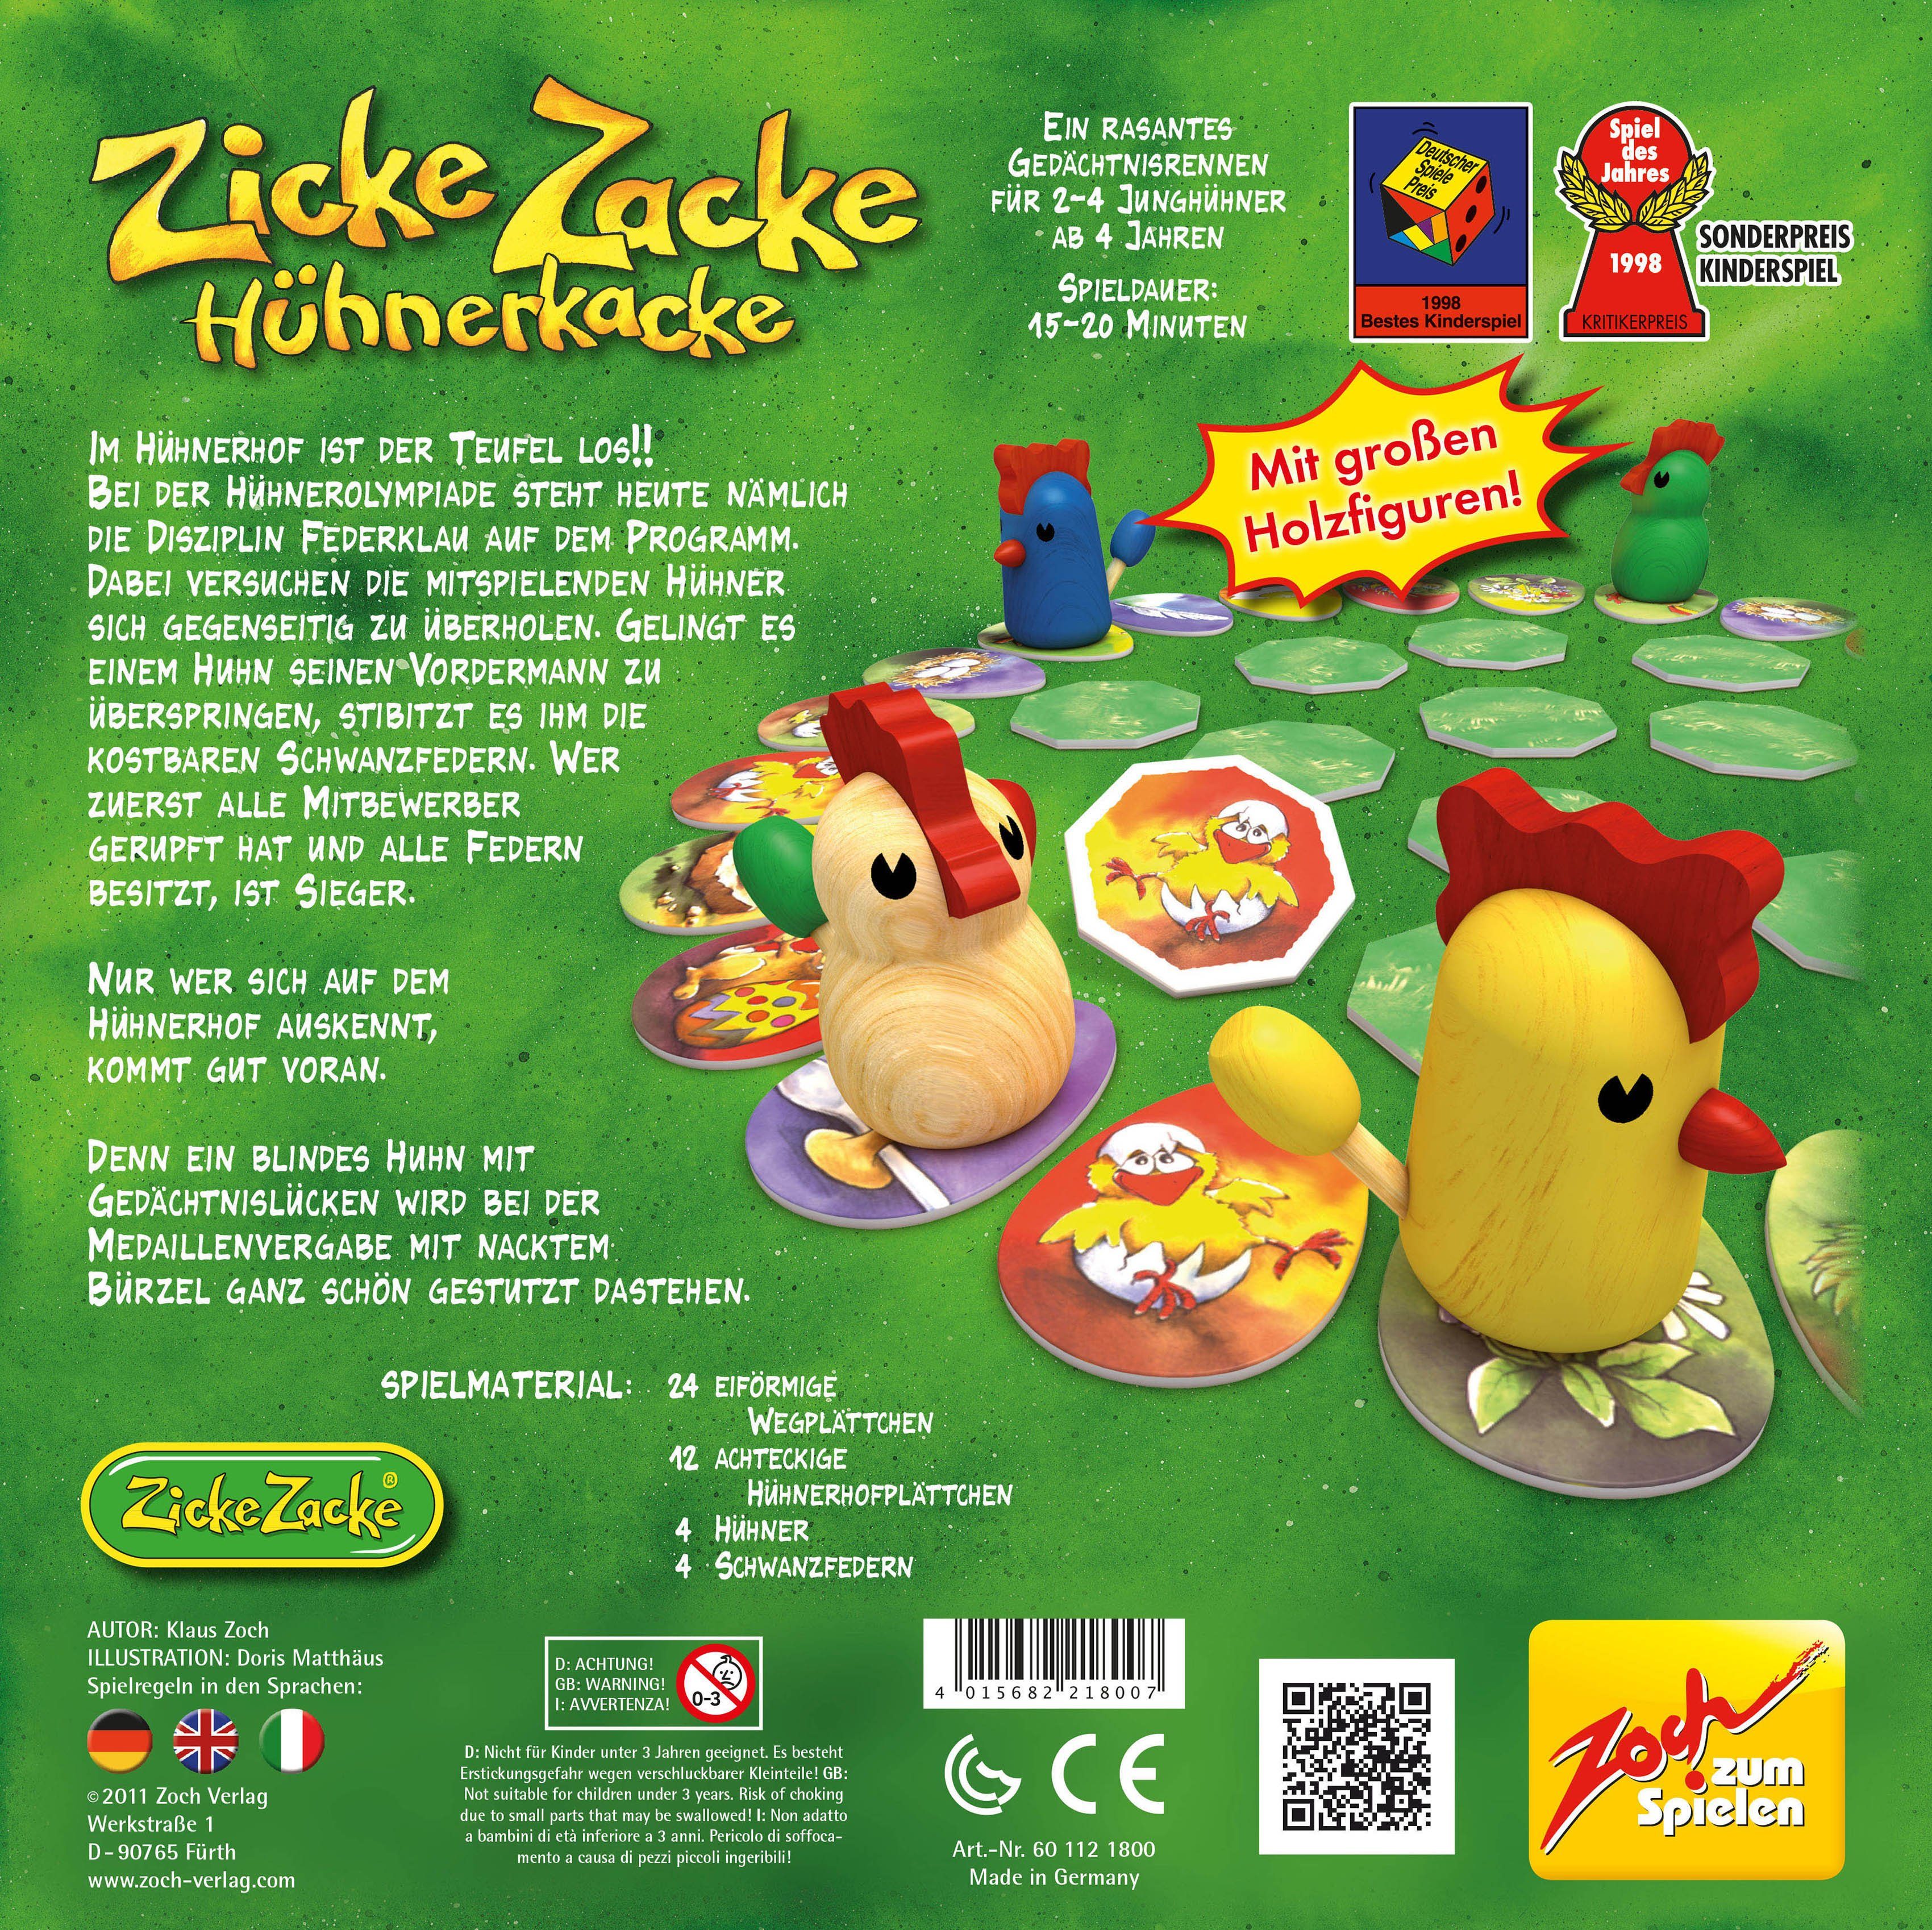 Zoch Spiel, Made Germany Hühnerkacke, in Zacke Zicke